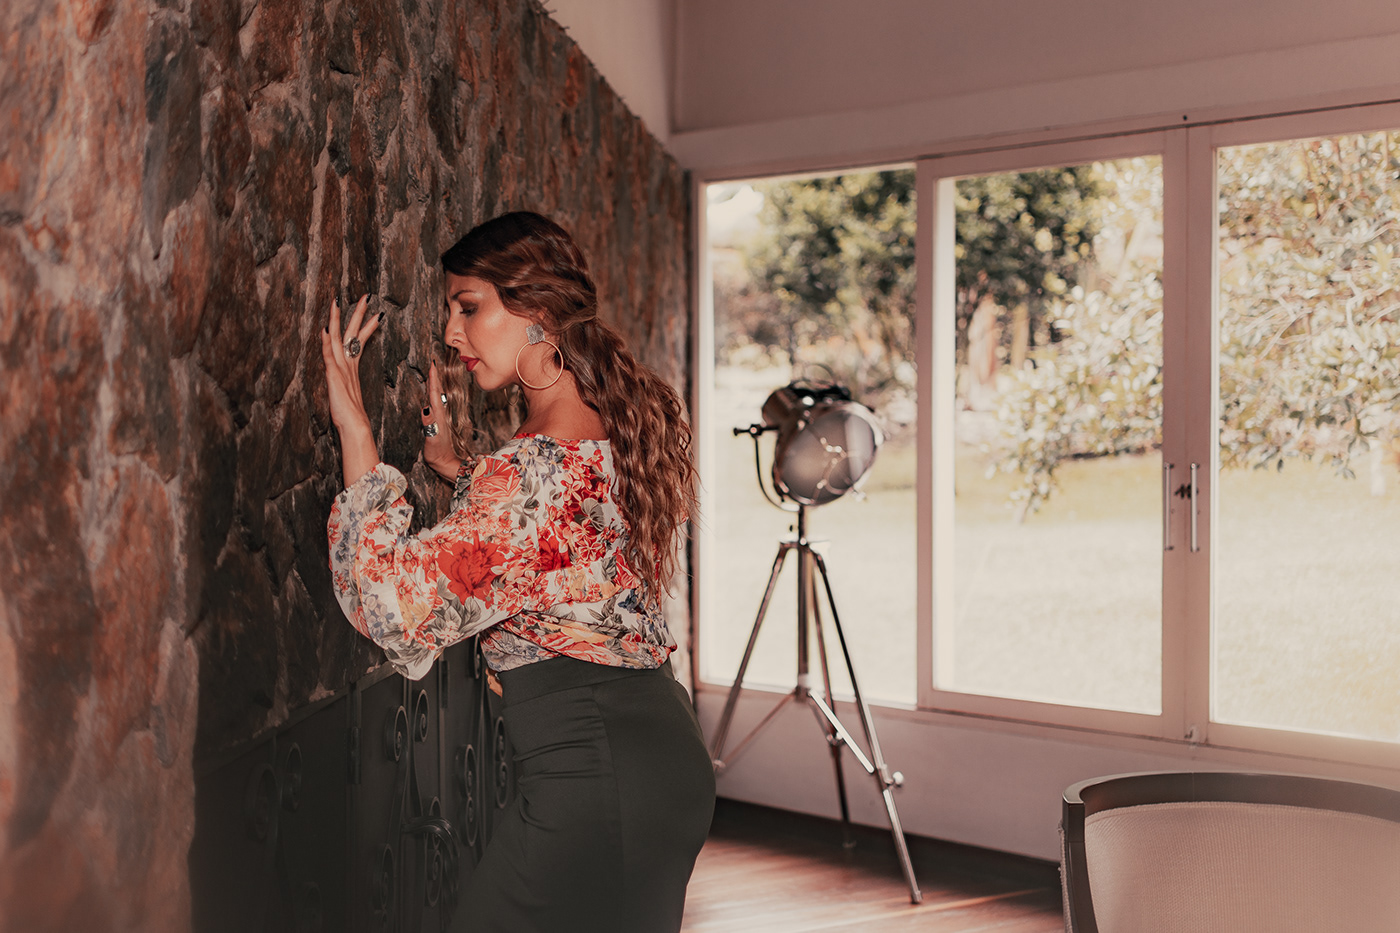 art artist bailaora españa Flamenco model photographer photoshoot portrait woman